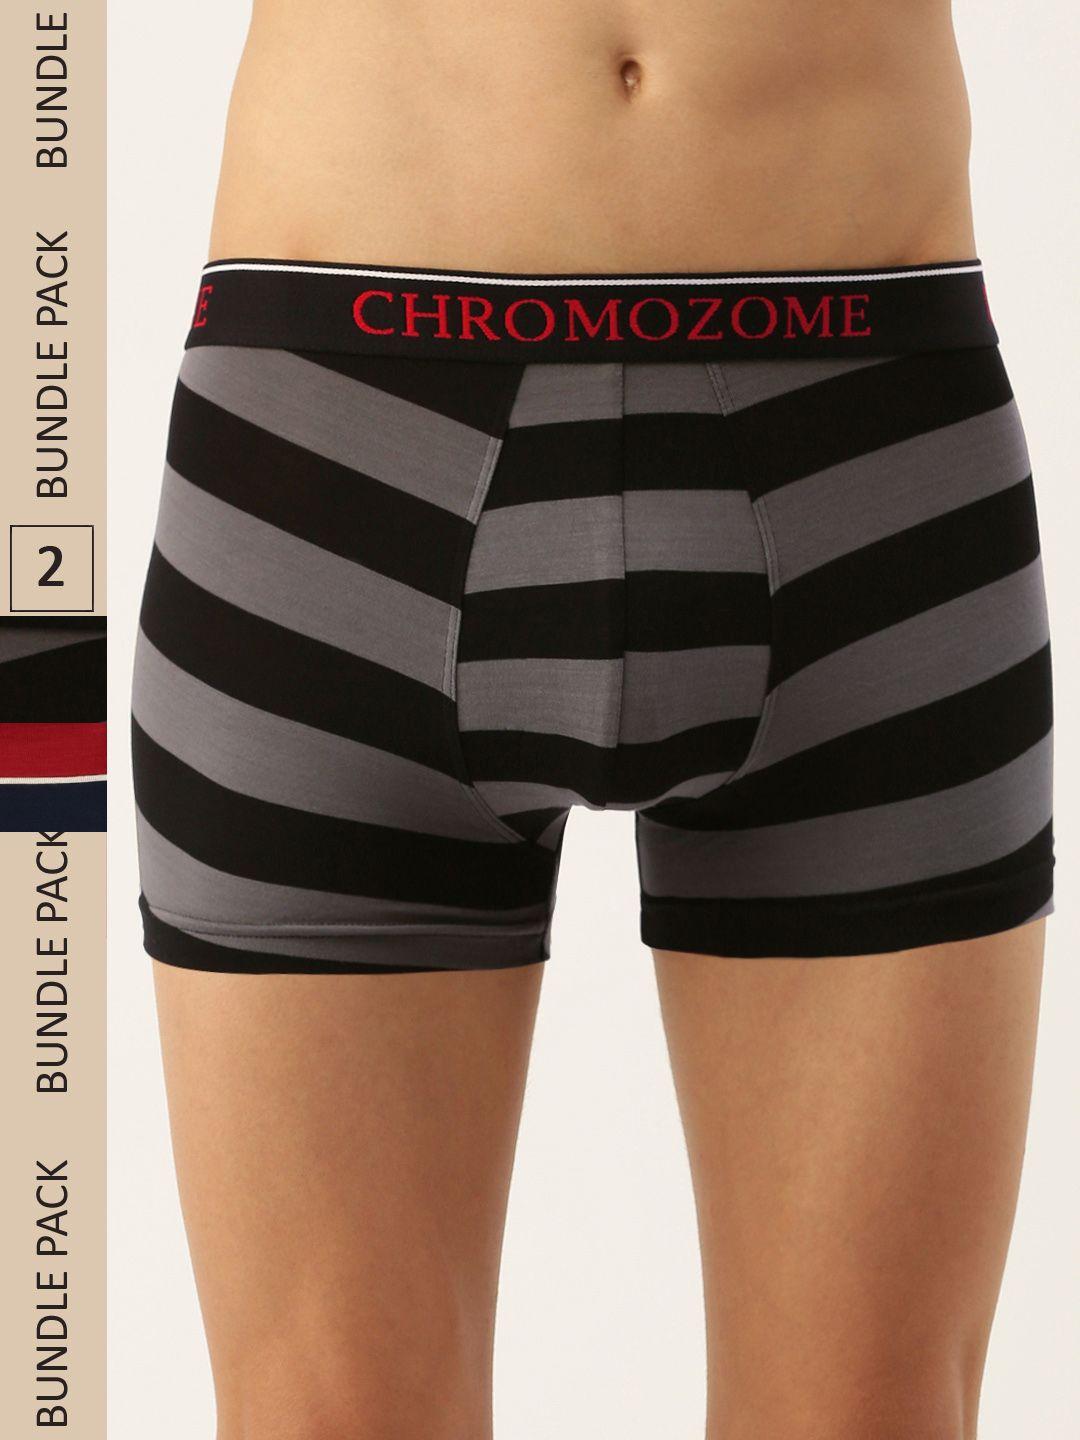 chromozome men pack of 2 ultra-premium striped trunks 8902733643467